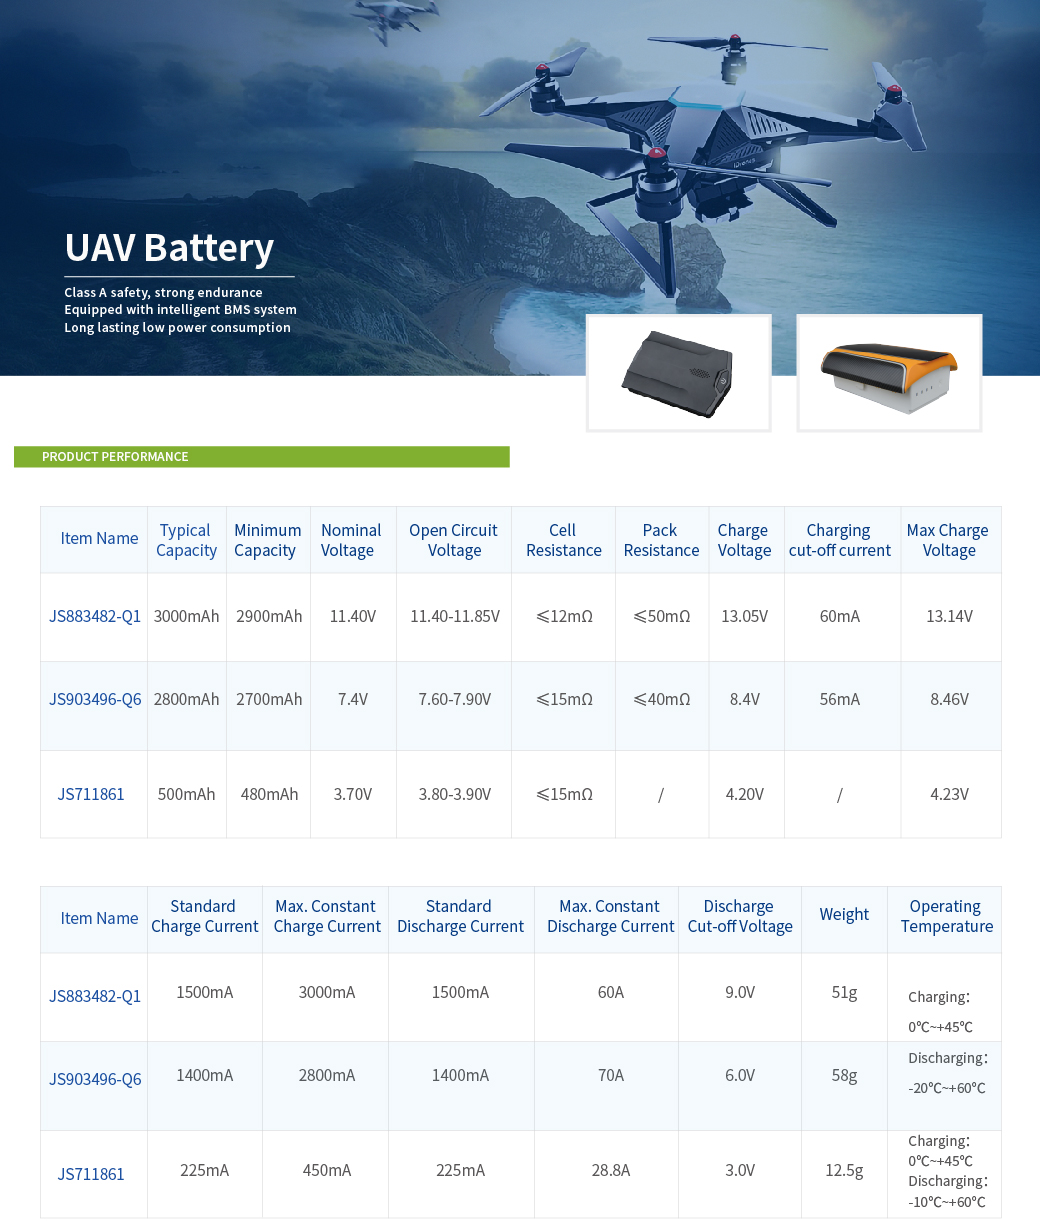 the detailed description of uav battery